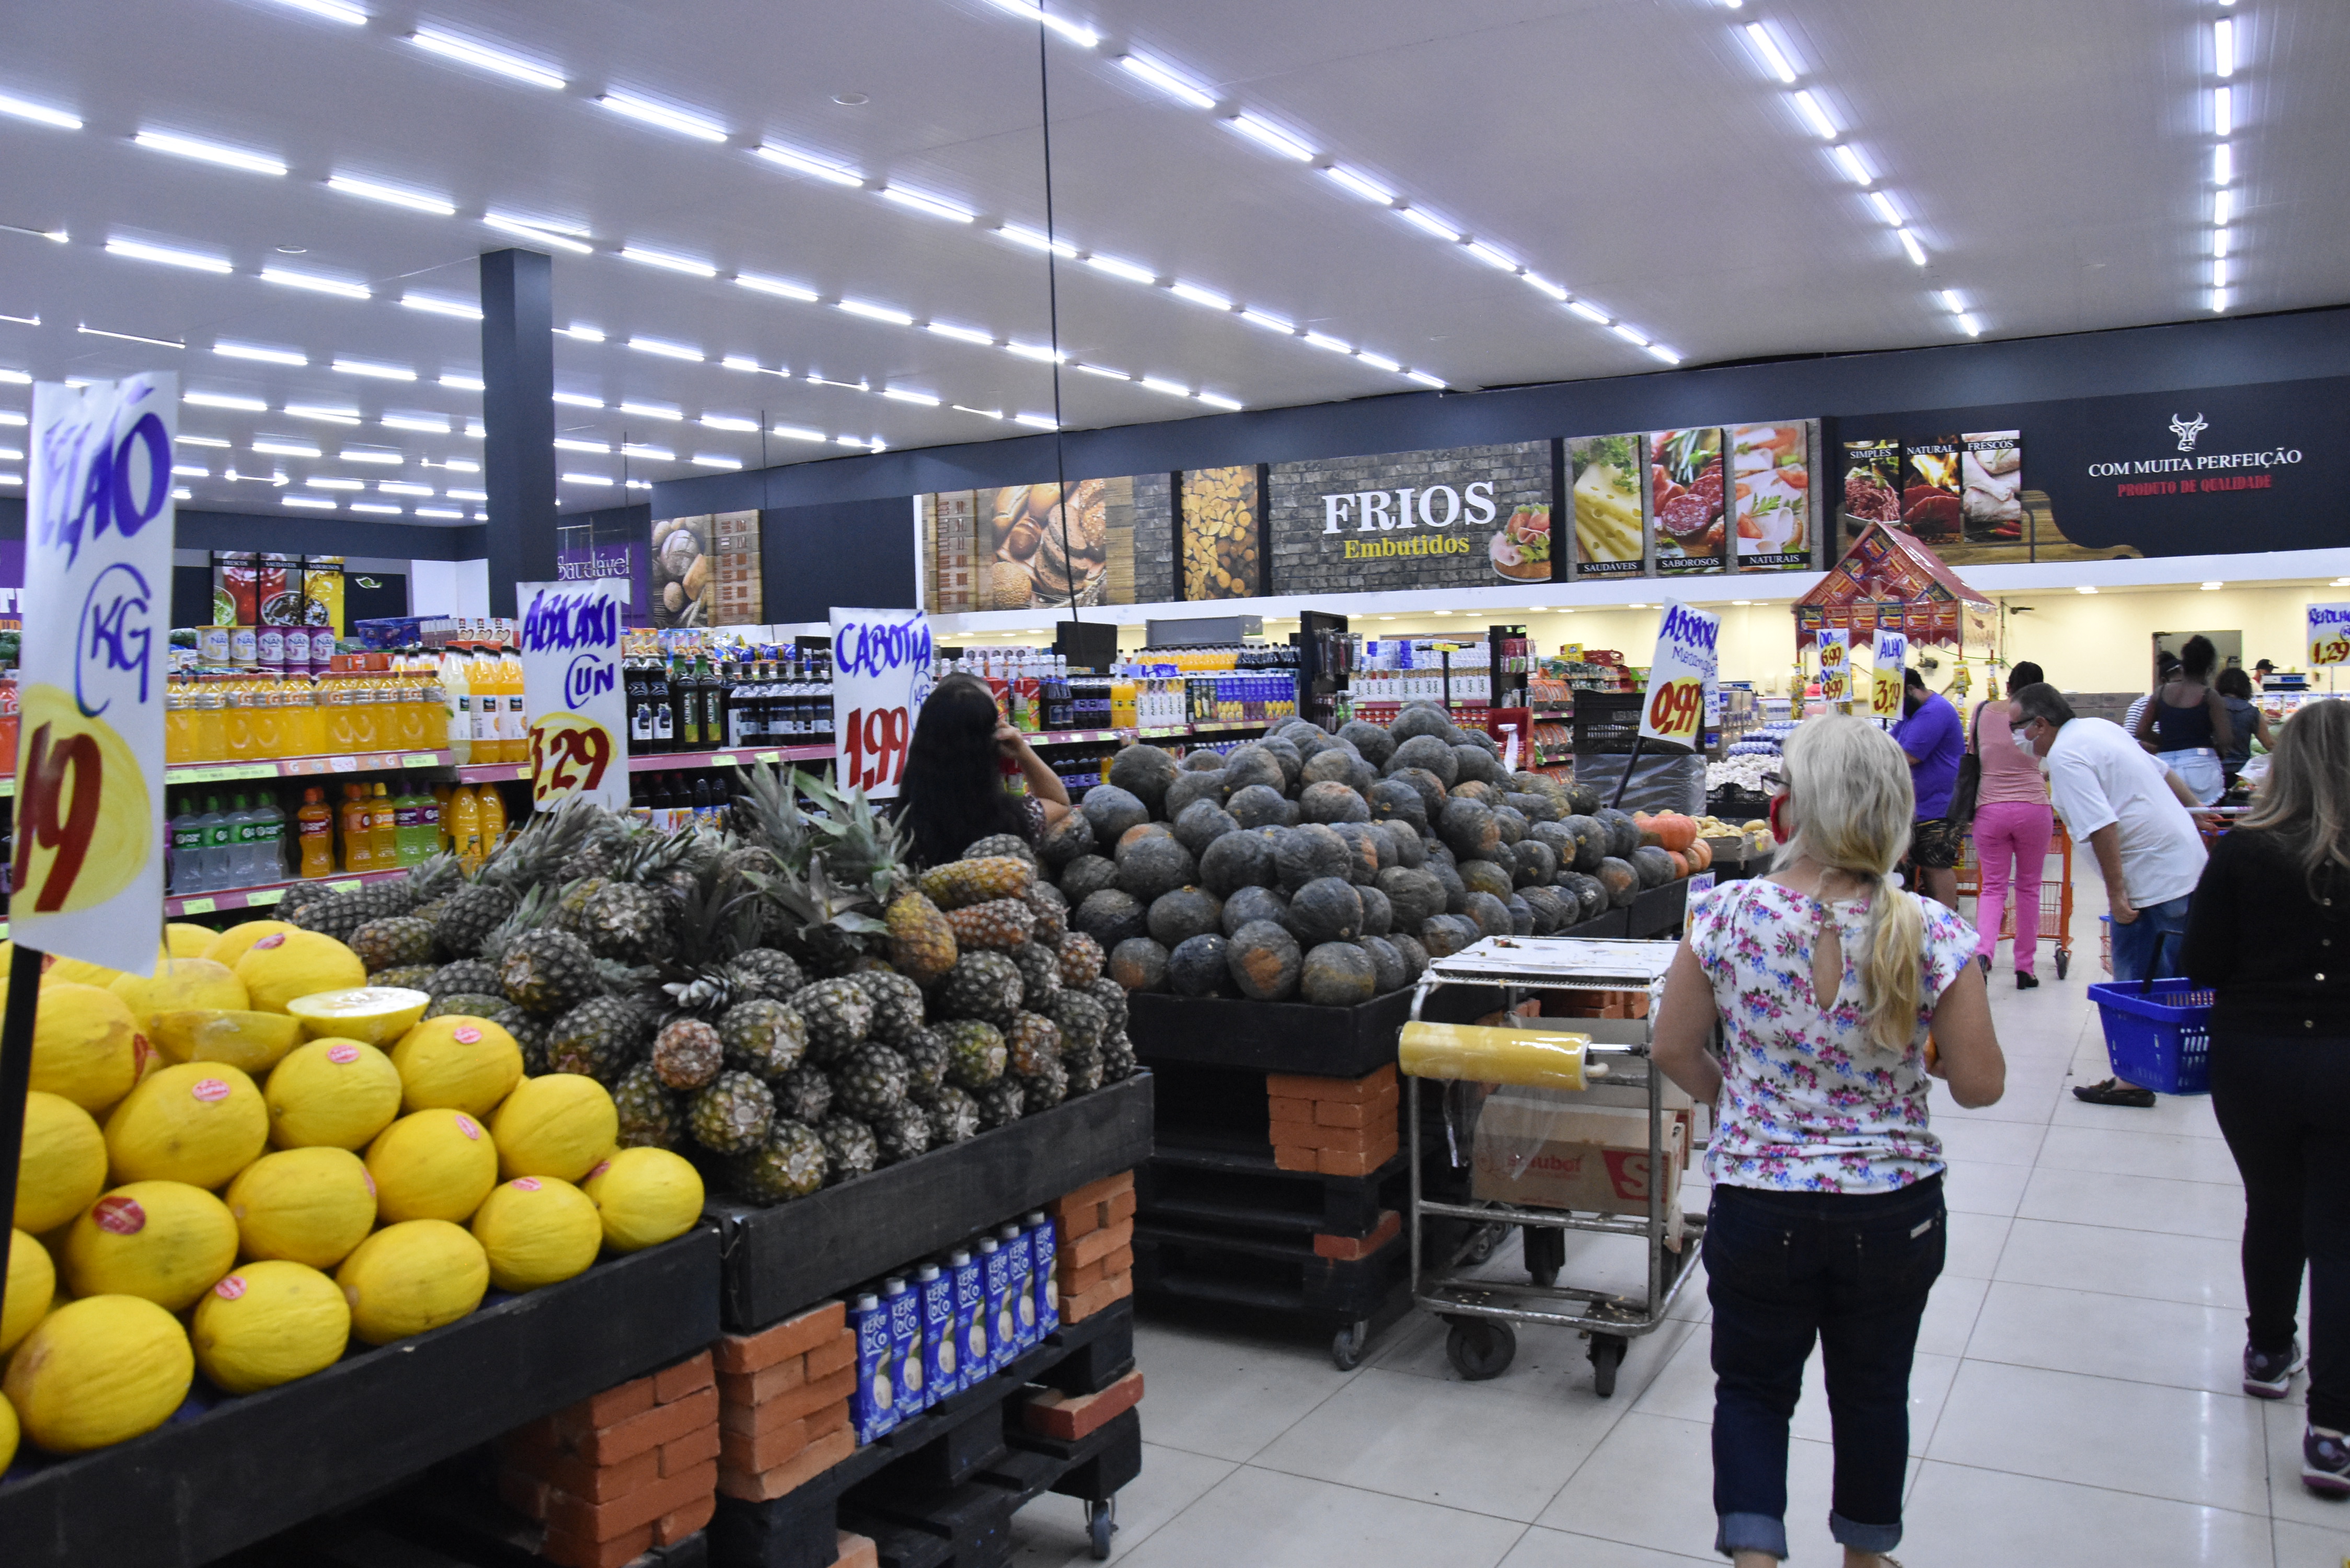 Ação ocorreu em 8 supermercados onde foram observados os preços de arroz tipo 1 e óleo de soja com o objetivo de verificar possível aumento injustificado